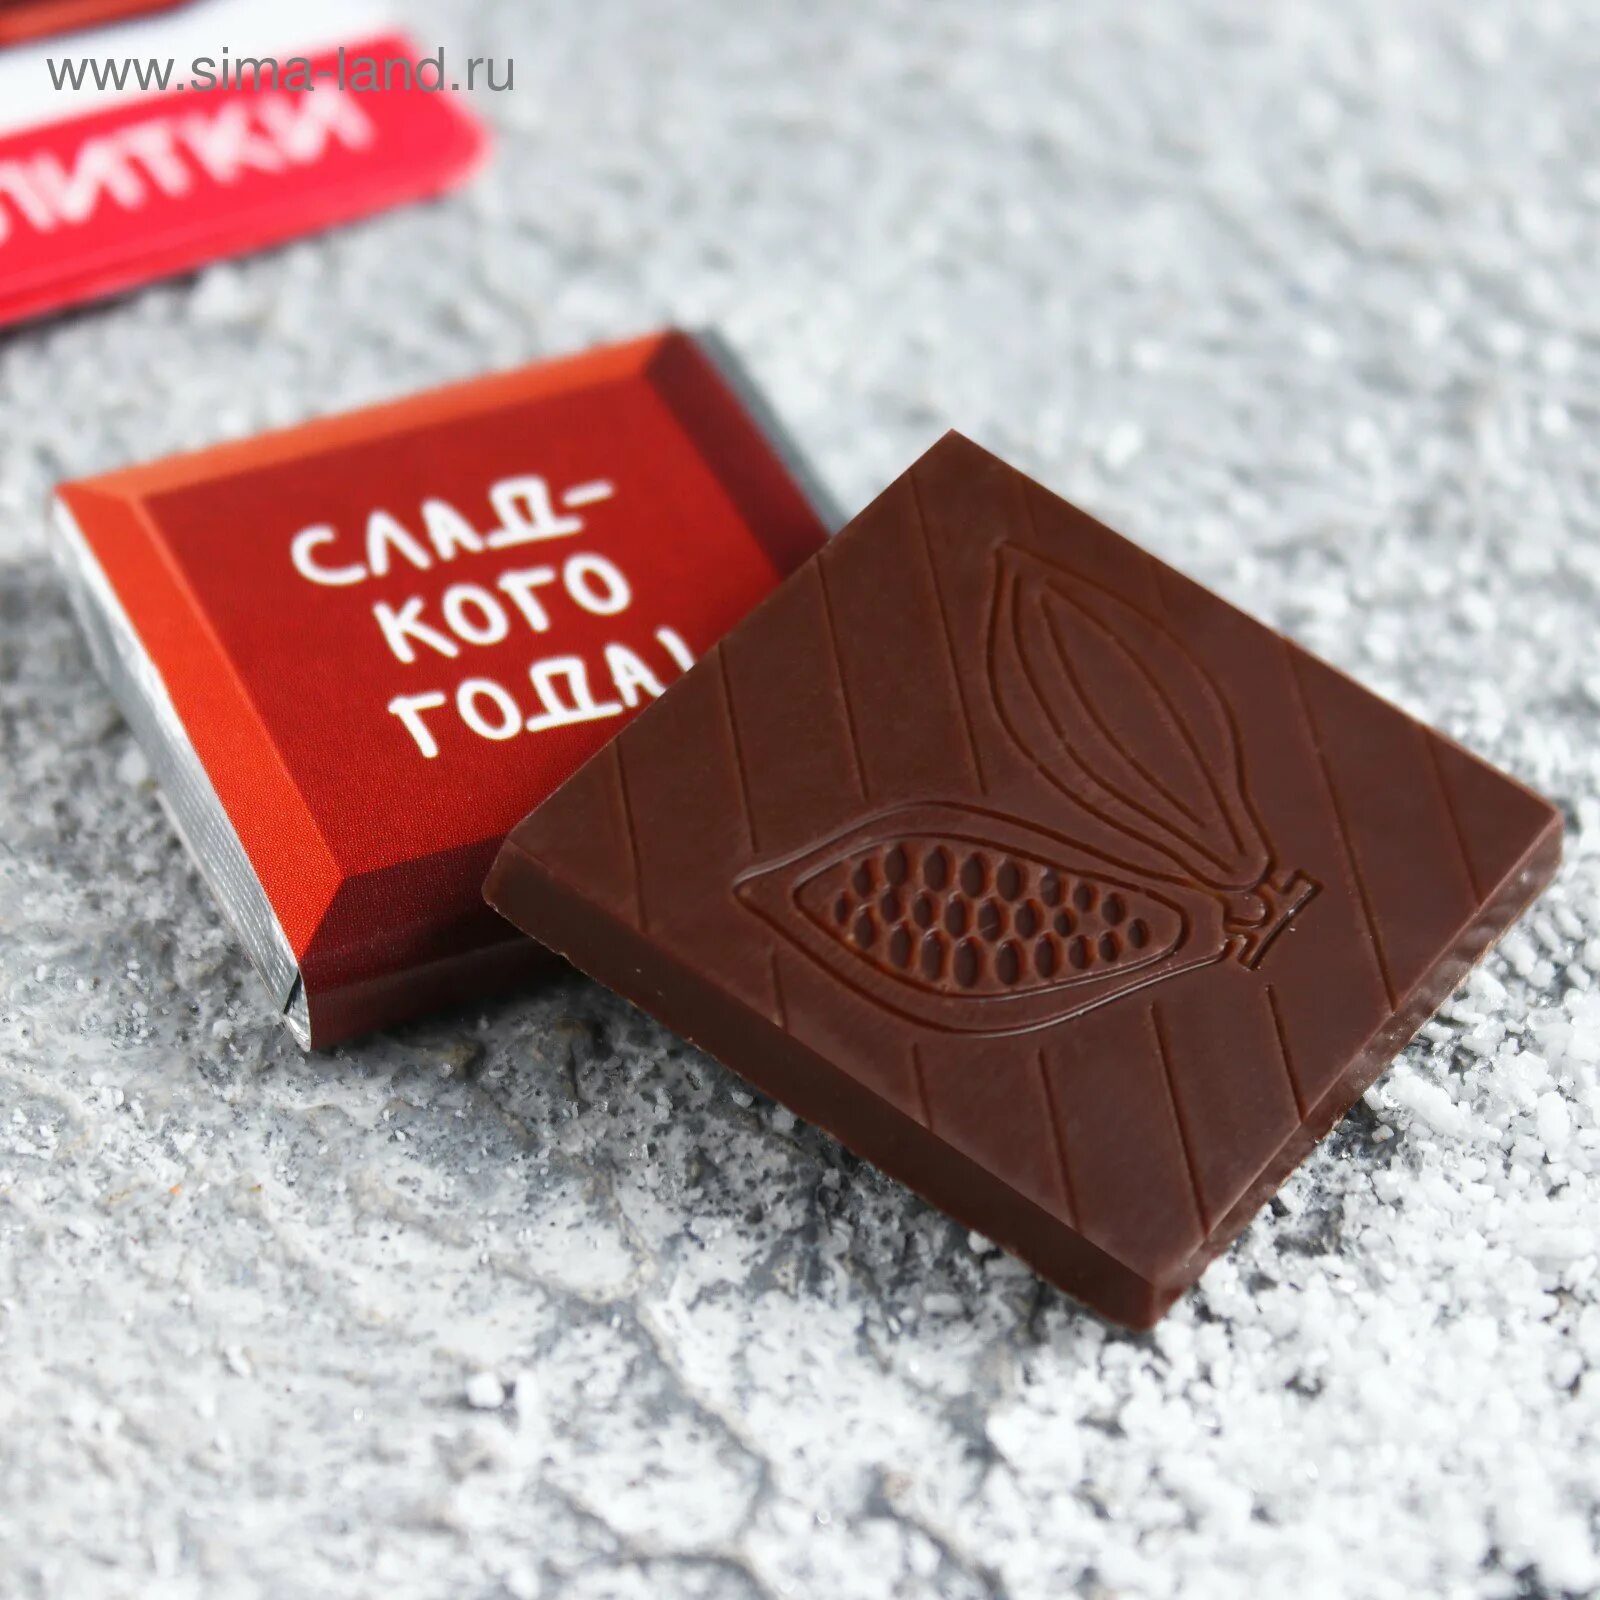 Шоколад квадрат. Мини шоколадки. Маленькие шоколадки. Шоколад с логотипом. Шоколадки с логотипом.